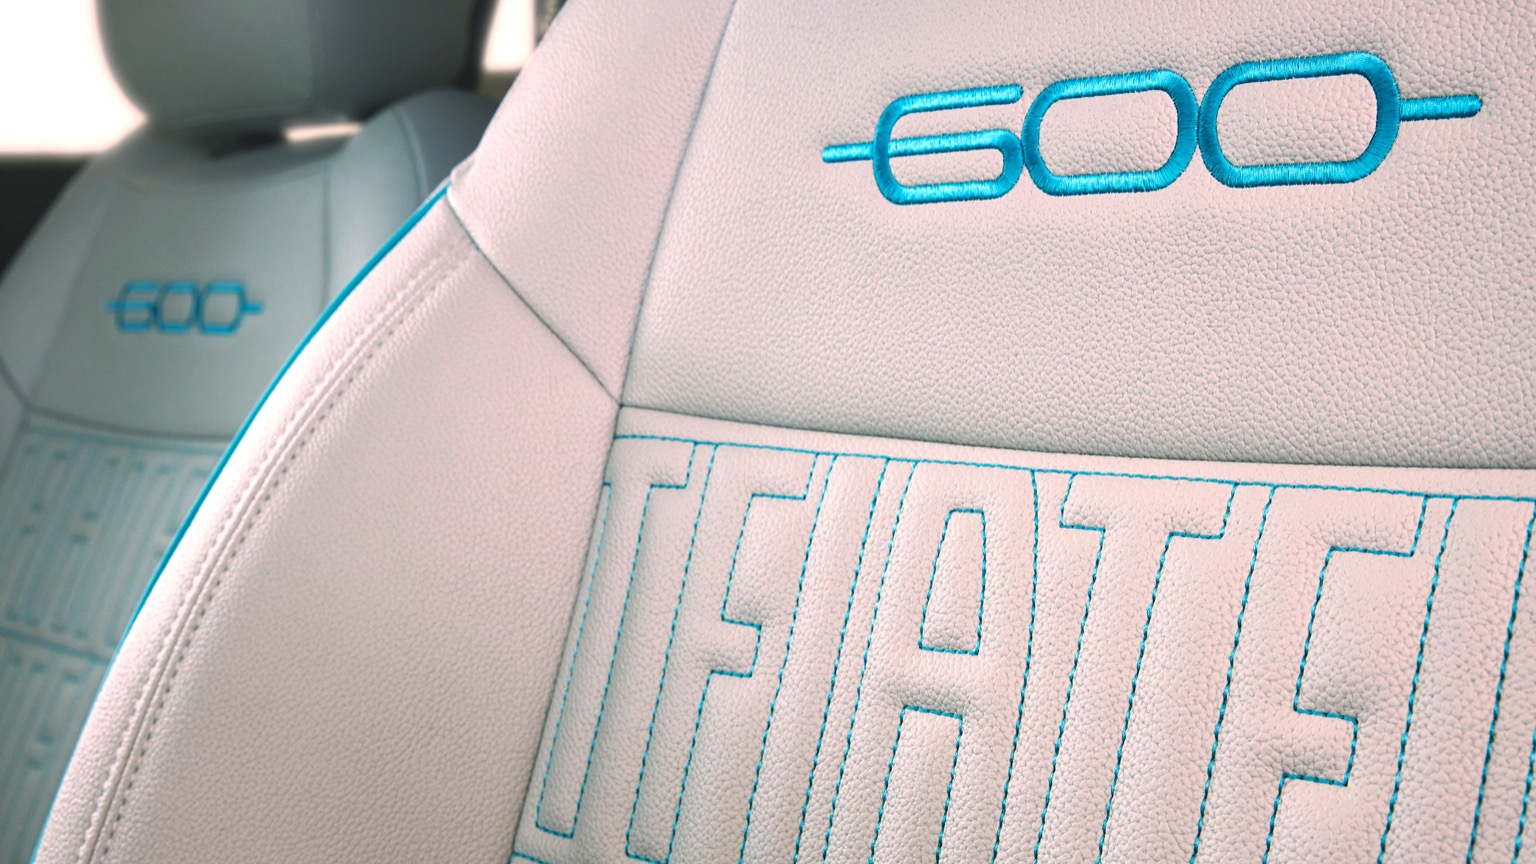 Fiat_600e-23